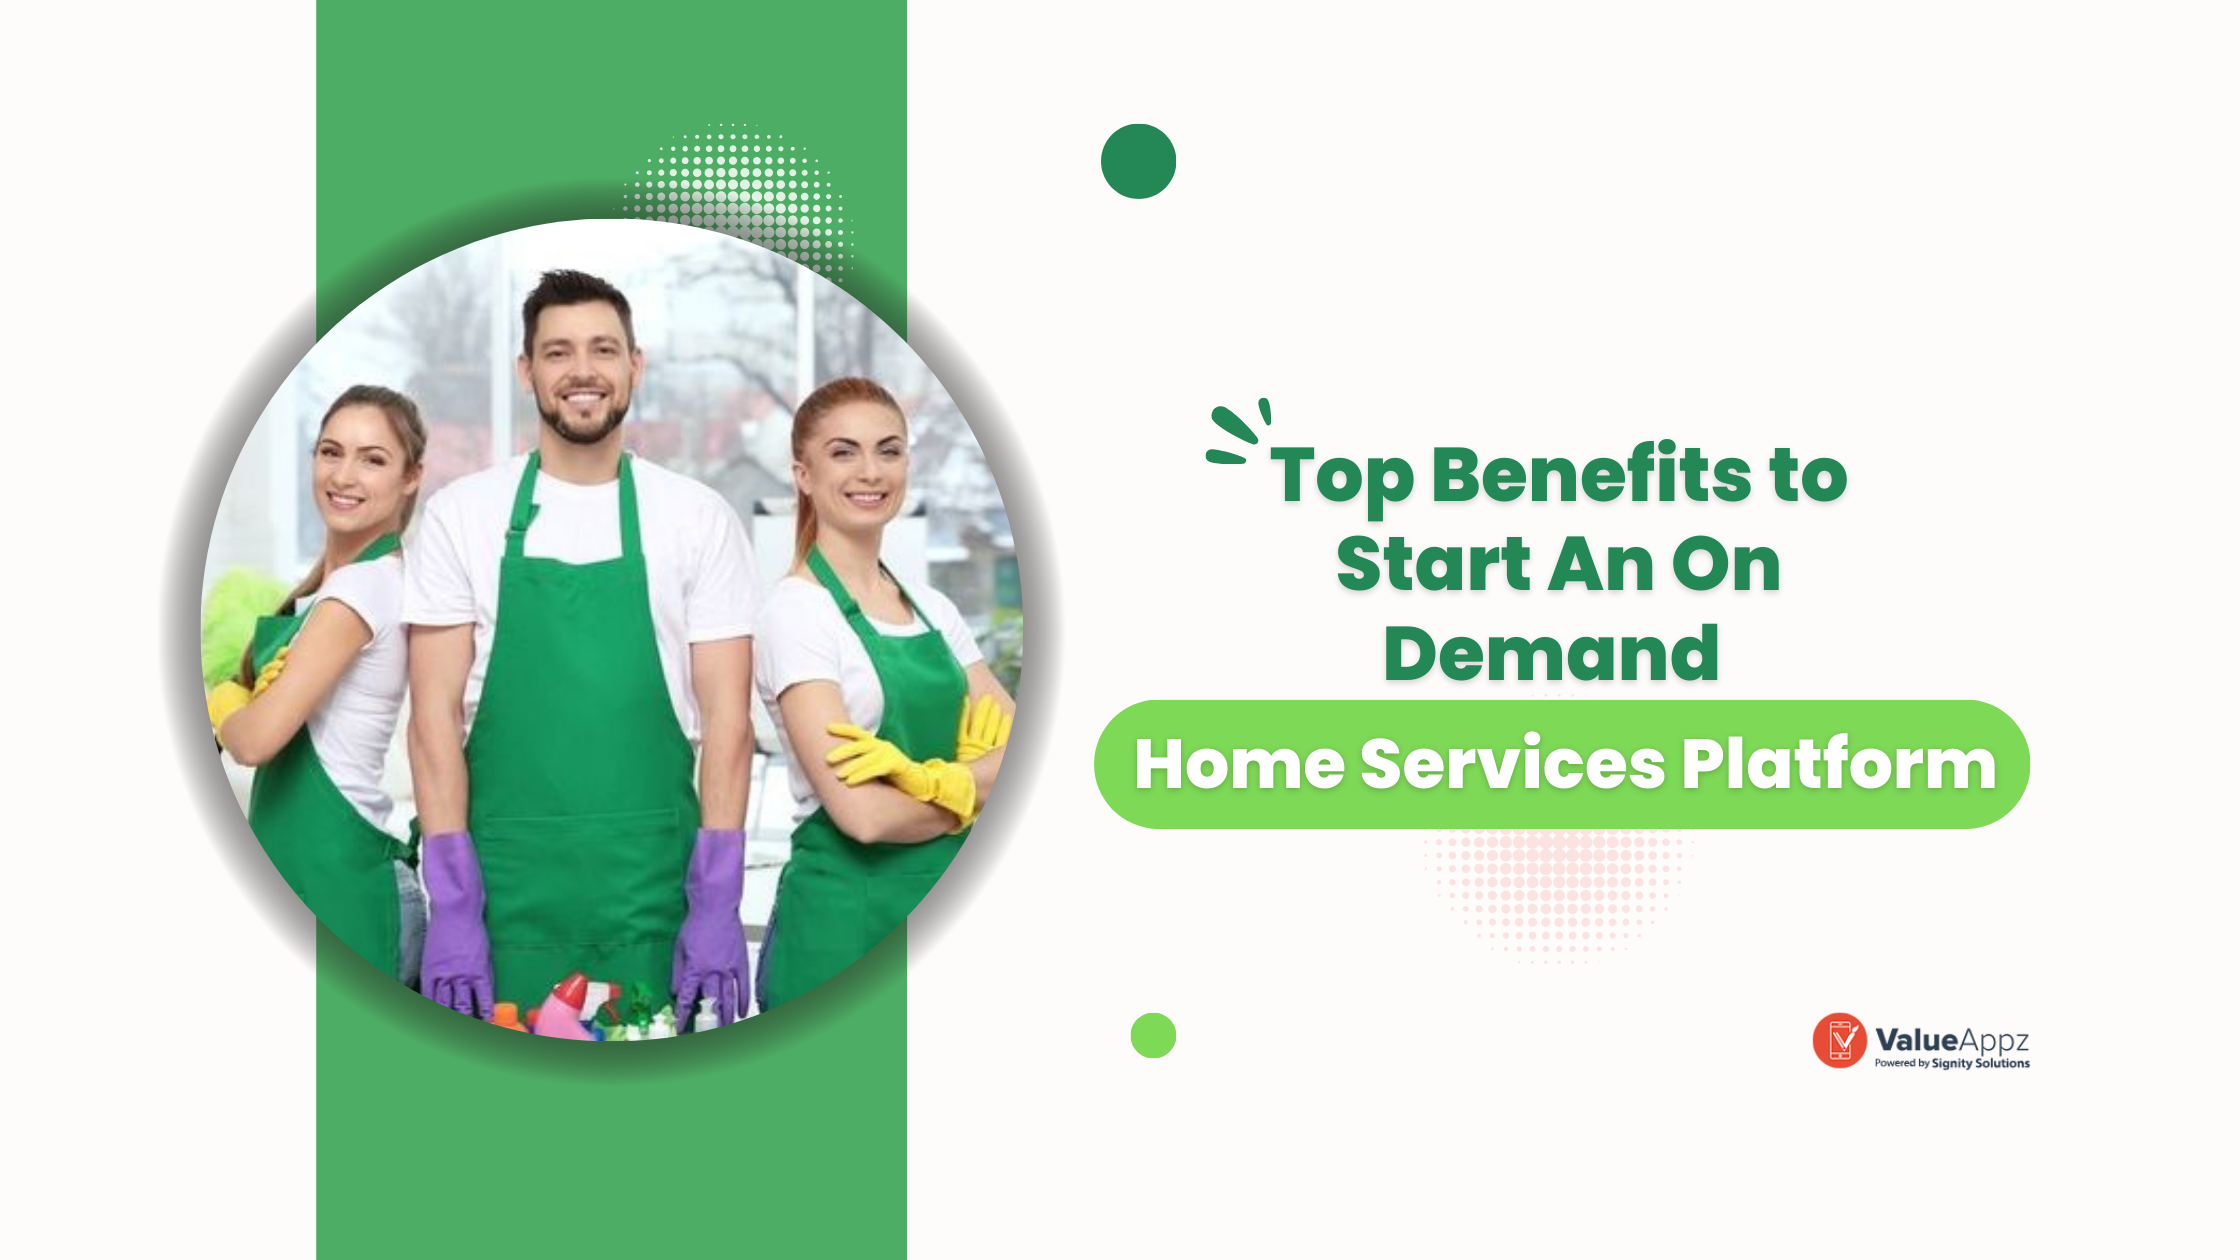 Top Benefits to Start An On Demand Home Services Platform